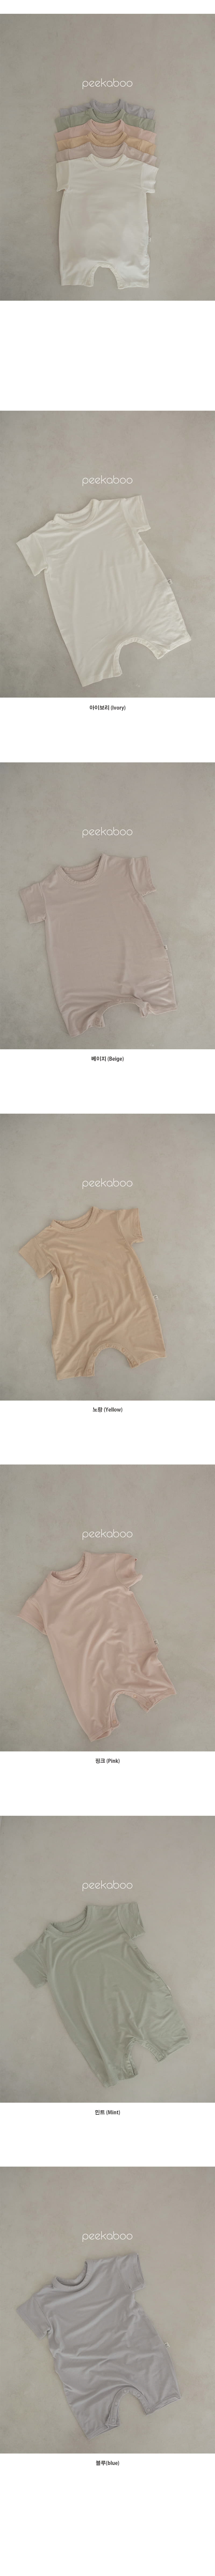 Peekaboo - Korean Baby Fashion - #onlinebabyboutique - Panda Bodysuit - 2